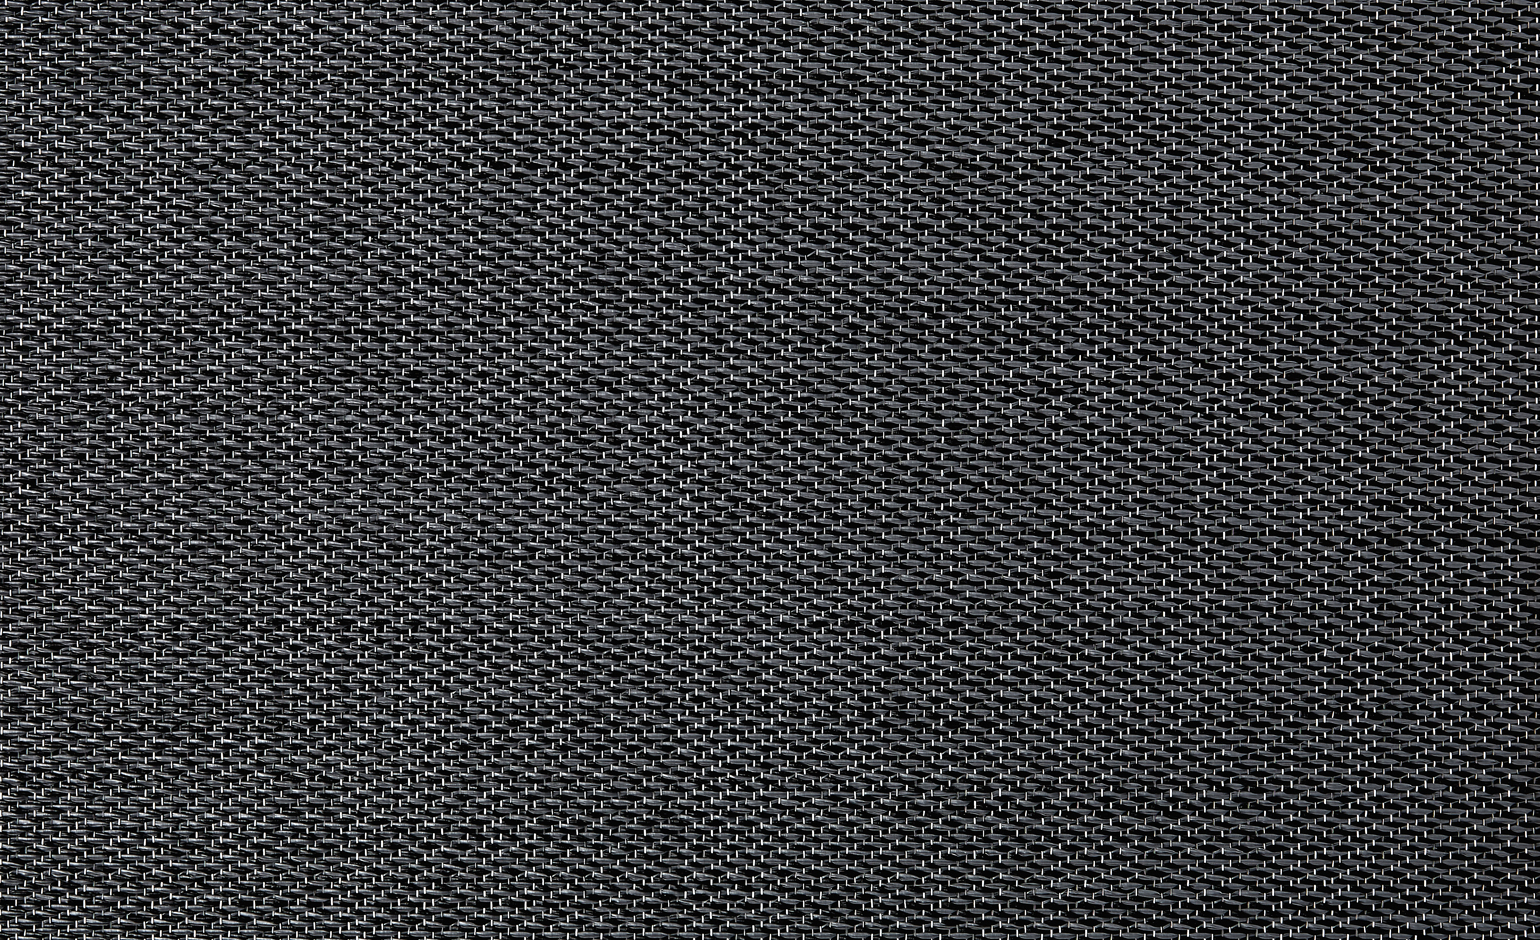 Sol vinyle rouleau NATURELOOK , Textile fibre tissée, ardoise, rouleau 2.00 m